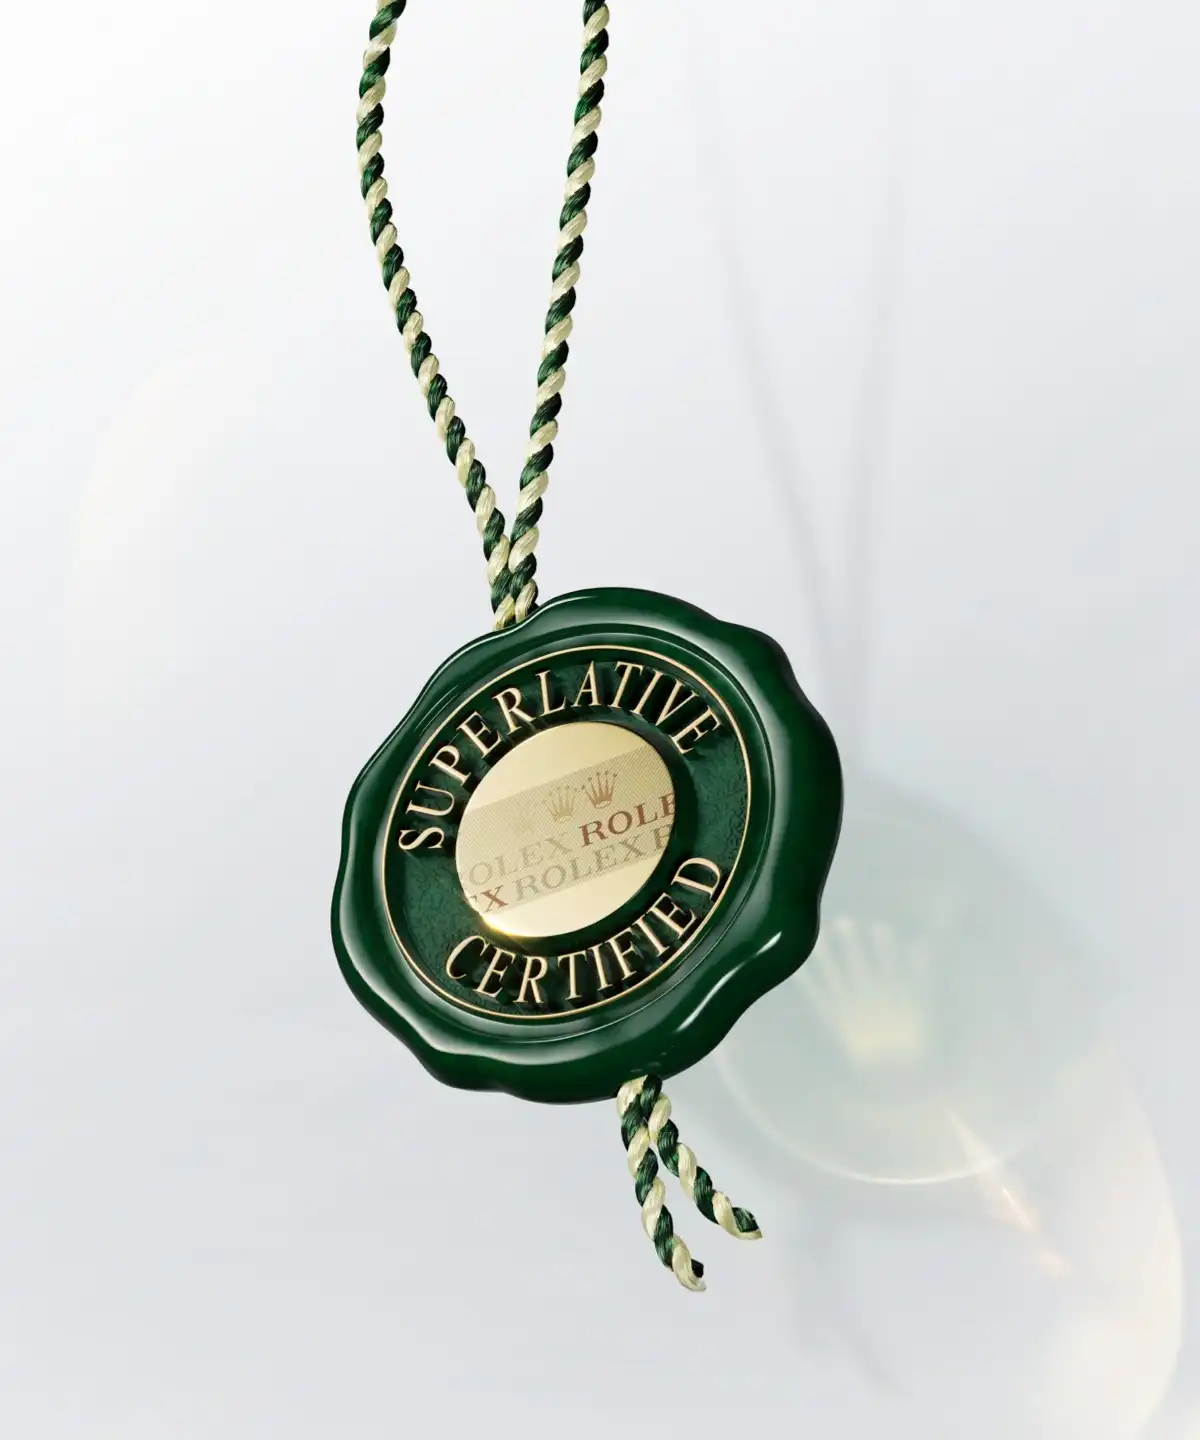 Rolex Green Seal Superlative Certified- Time Avenue